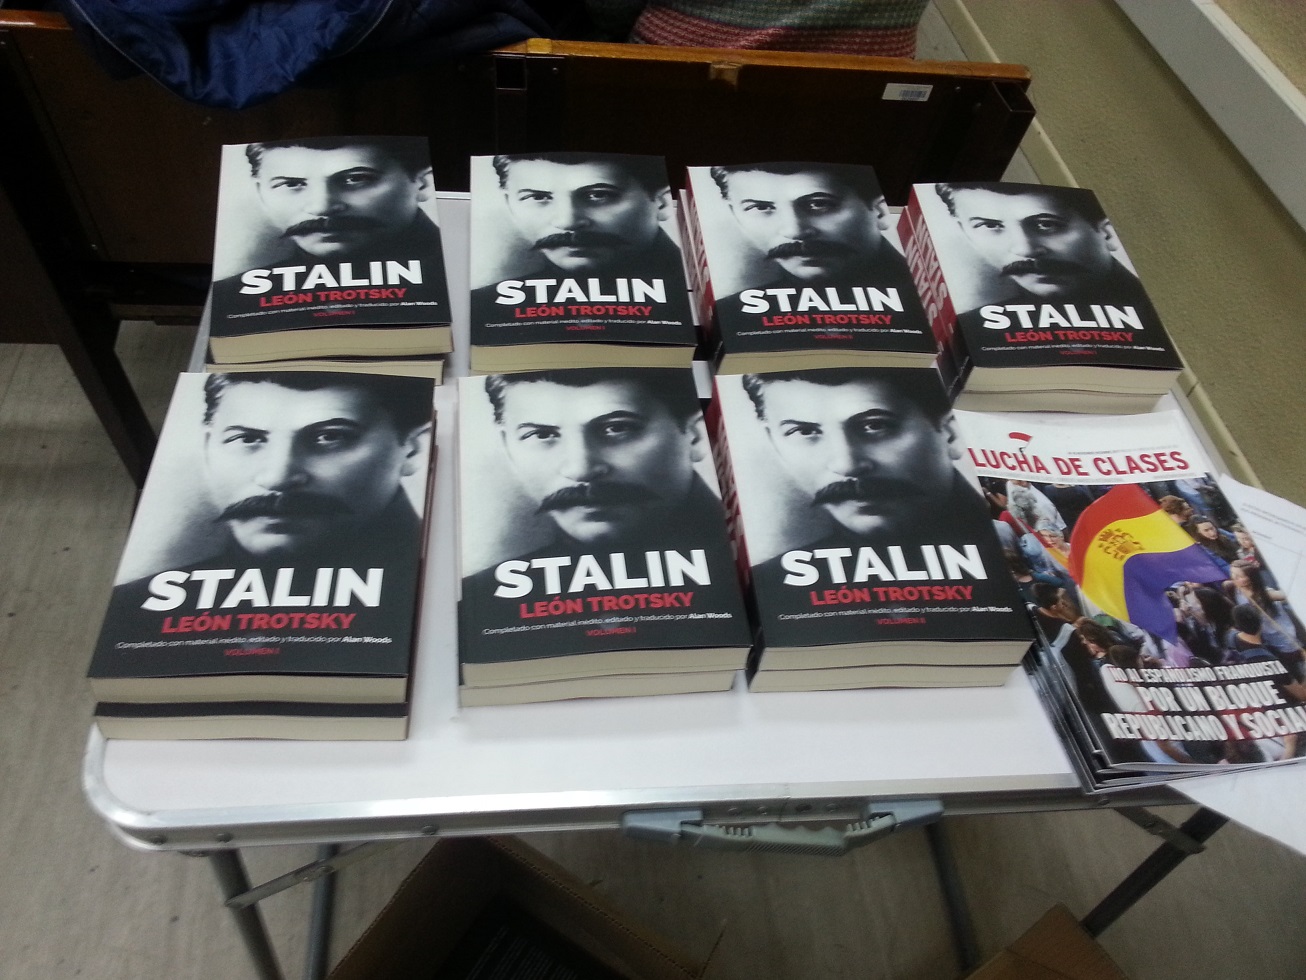 Spanish langauge version of Stalin Image own work